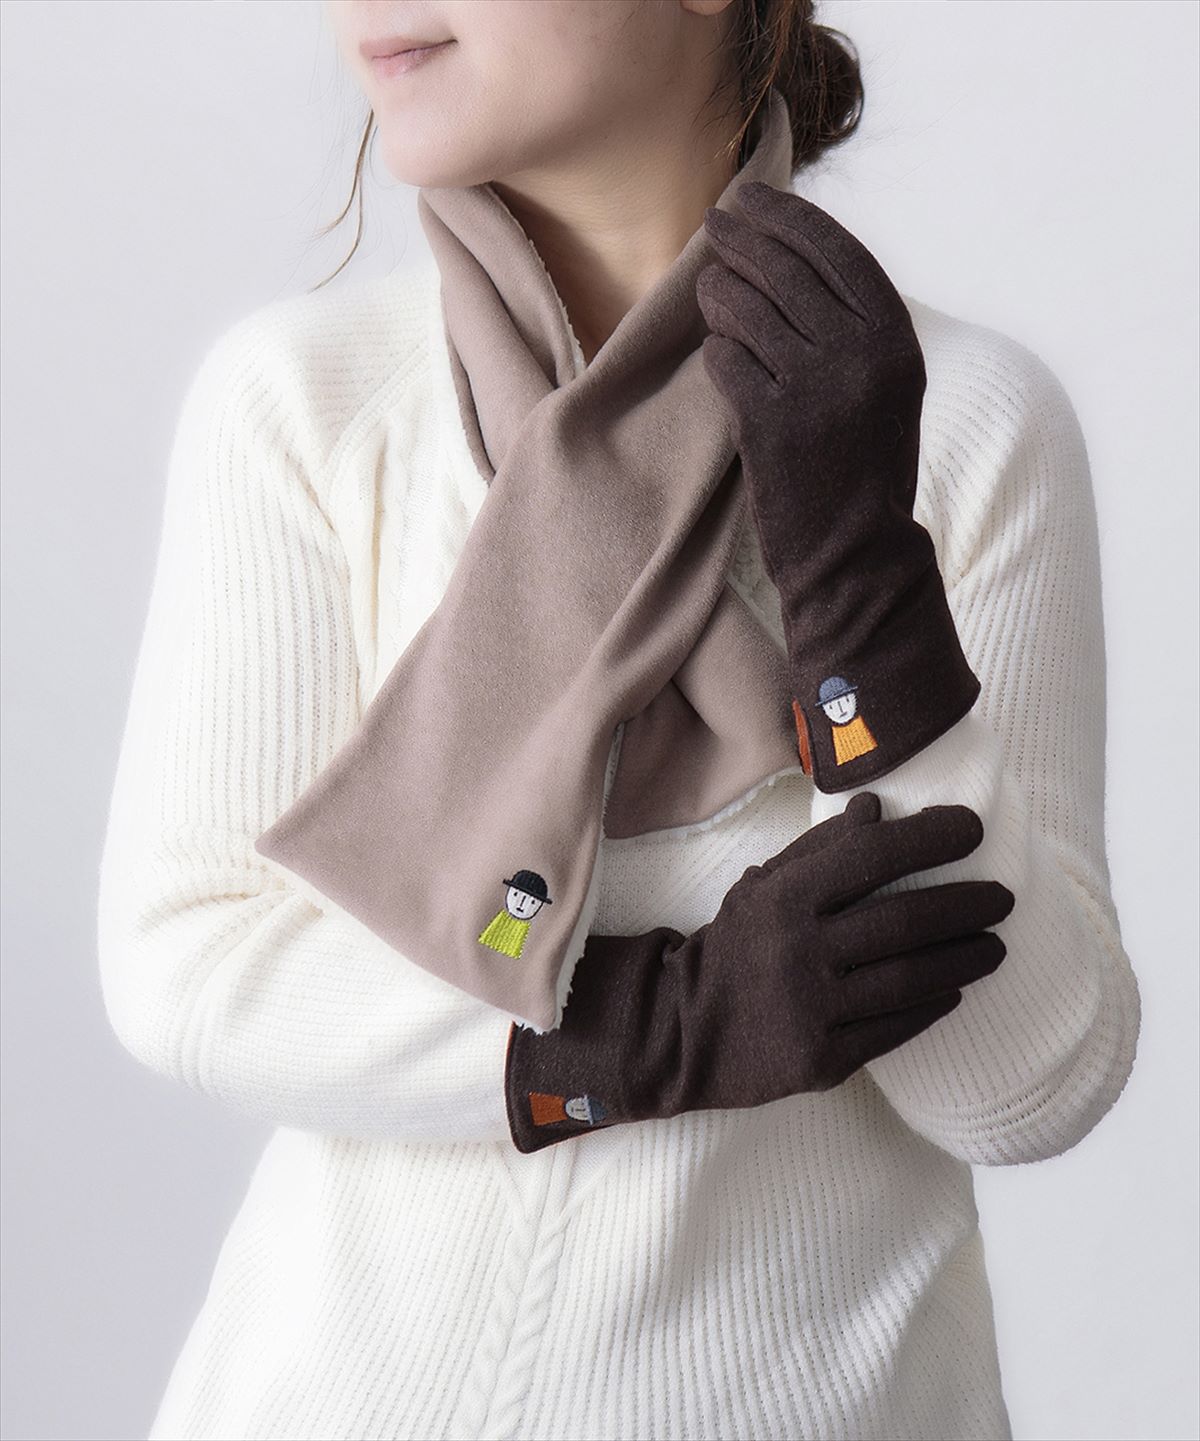 手袋 レディース ブランド 暖かい 指先あり スマホ対応 防寒 かわいい